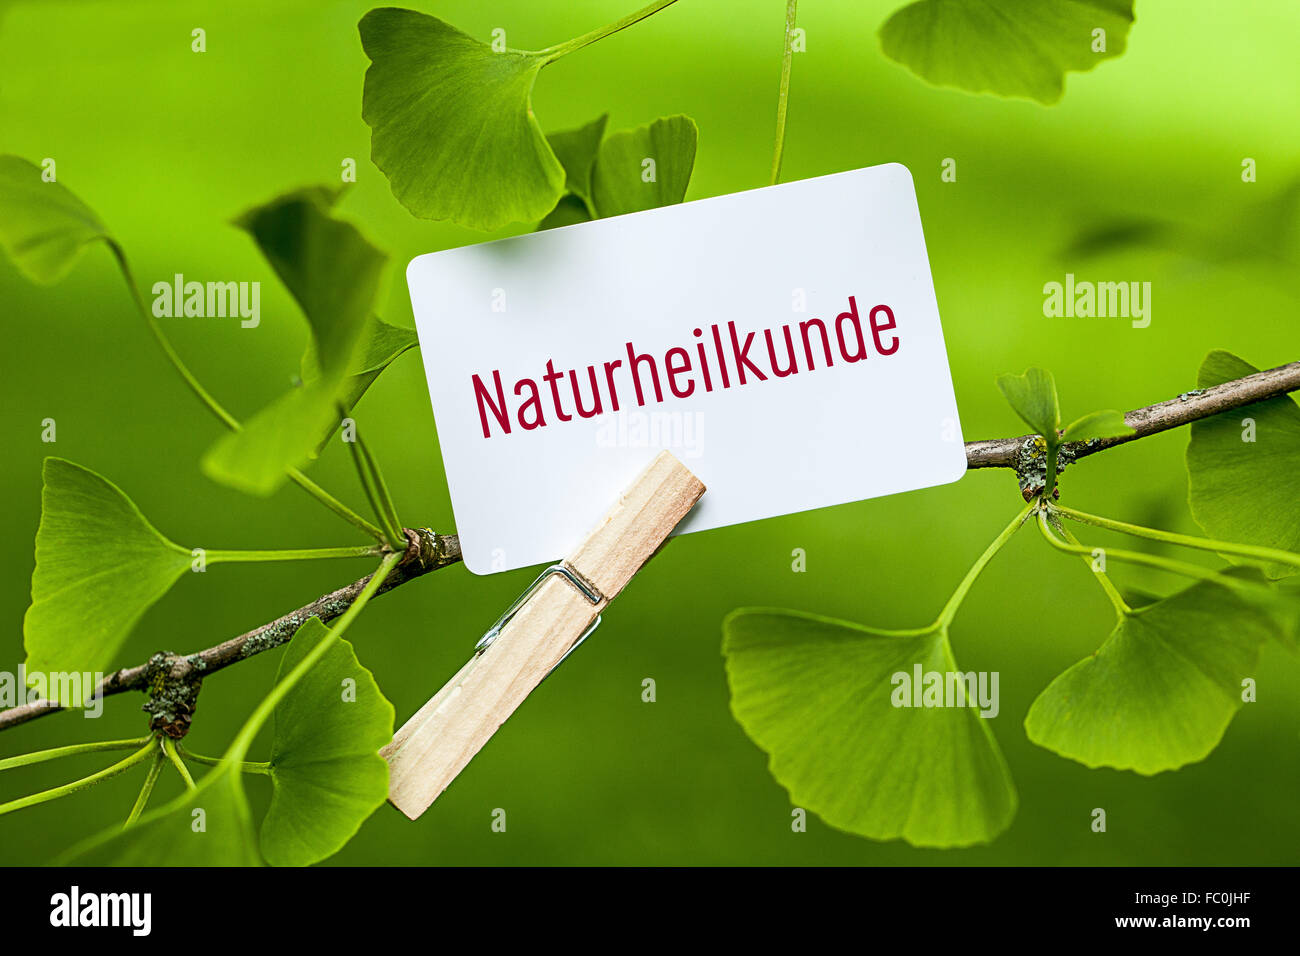 La palabra "Naturheilkunde en un árbol de ginkgo Foto de stock